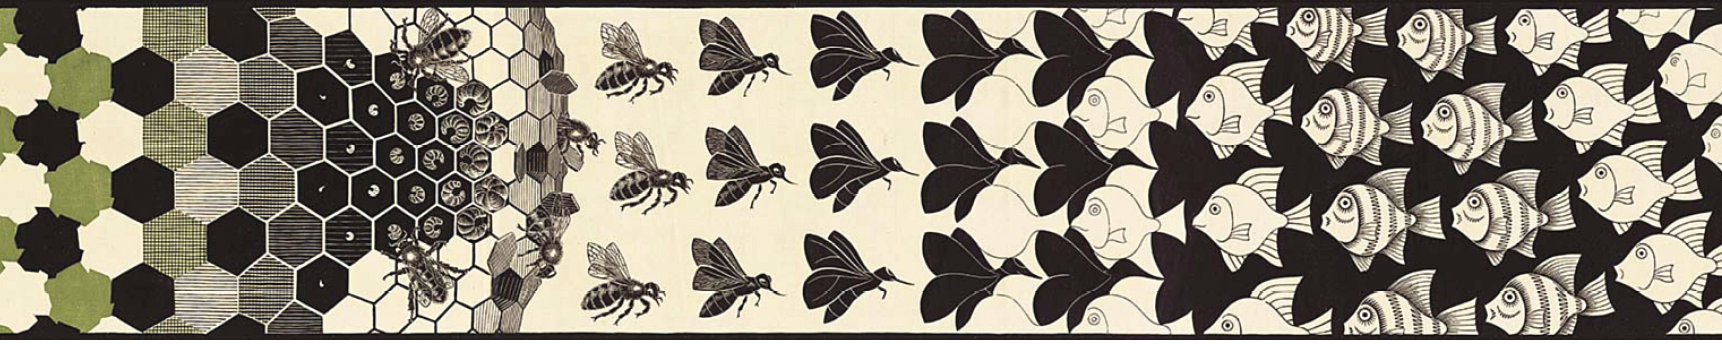 Xilogravura. Painel composto de quatro faixas horizontais com imagens que se conectam entre si. Da esquerda para a direita e de cima para baixo: Na segunda faixa, uma colmeia vai se transformando em abelhas, borboletas e pássaros, sucessivamente, todos seguindo na mesma direção. Do lado contrário, peixes podem ser vistos.